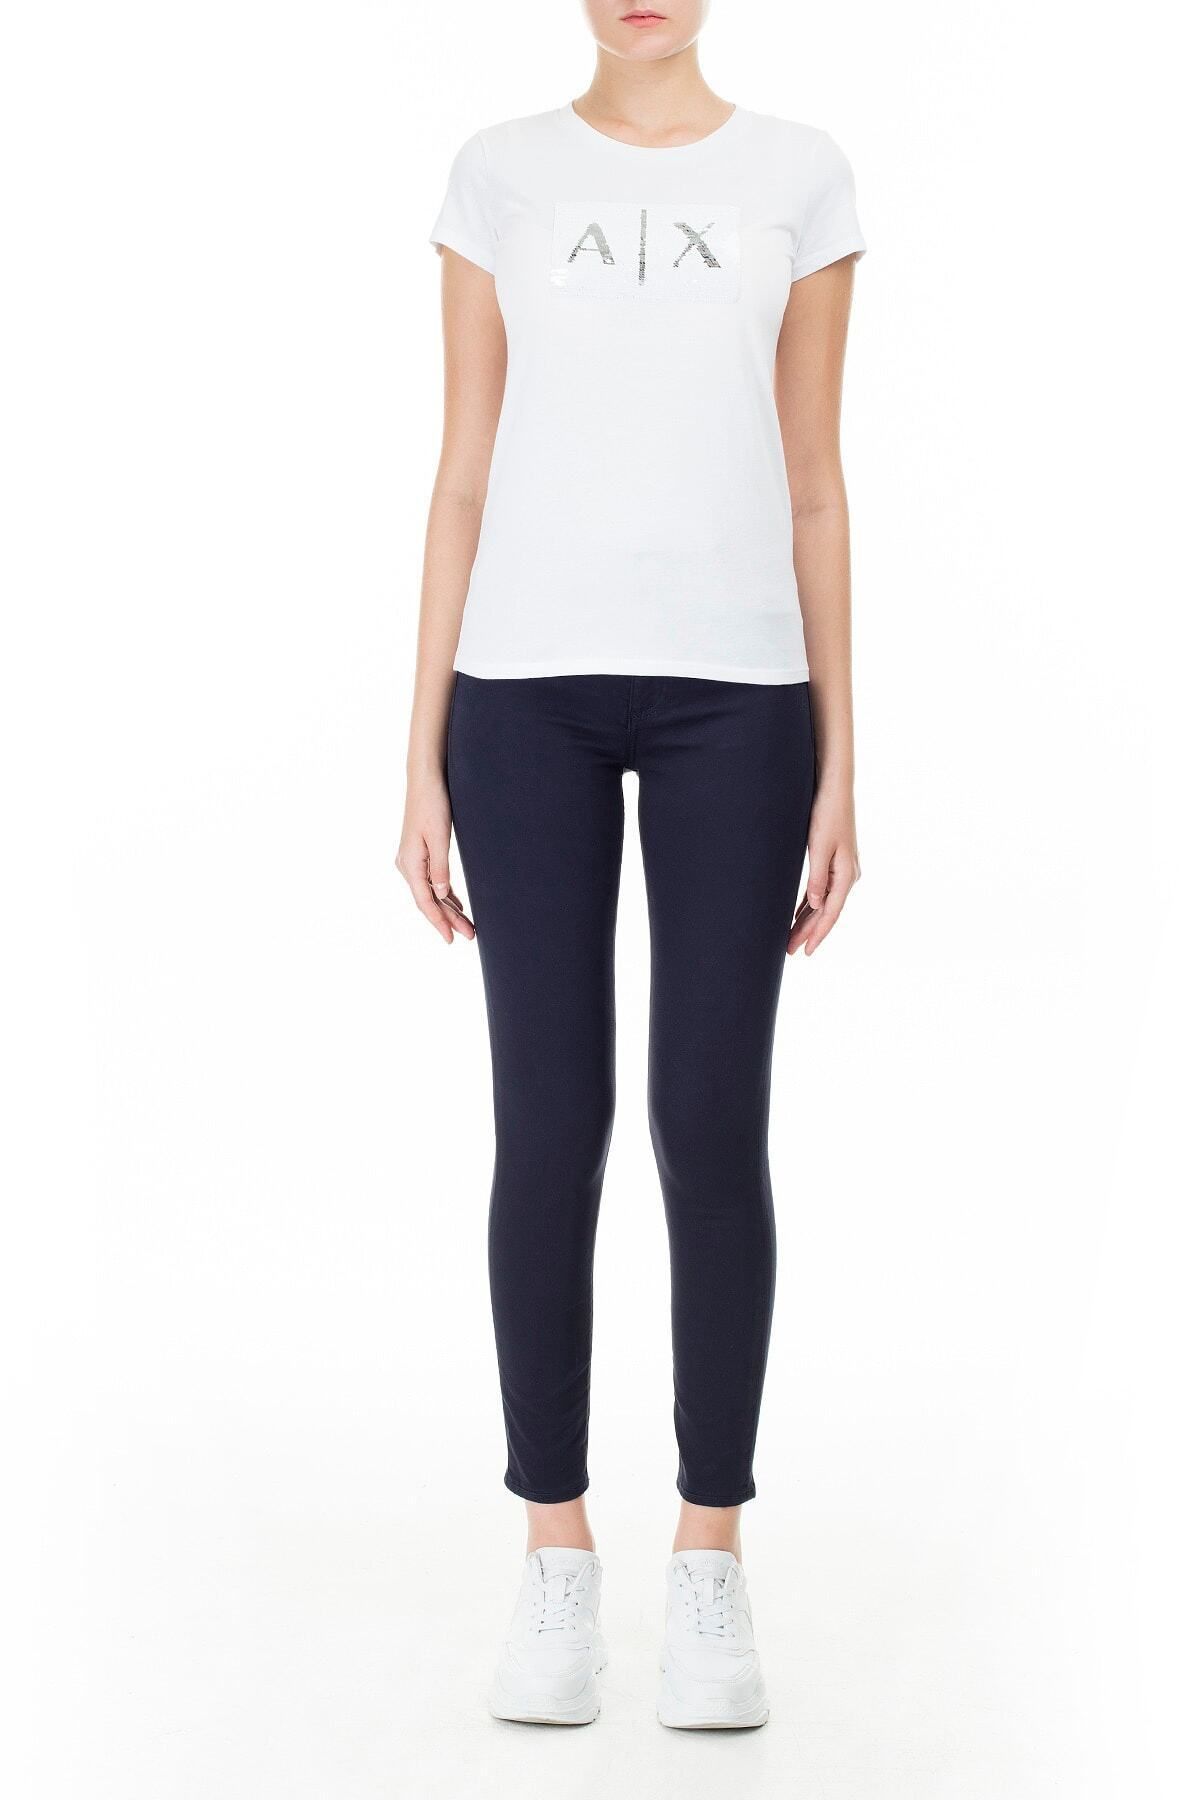 Armani Exchange Kadın Lacivert Super Skinny Jeans Kot Pantolon